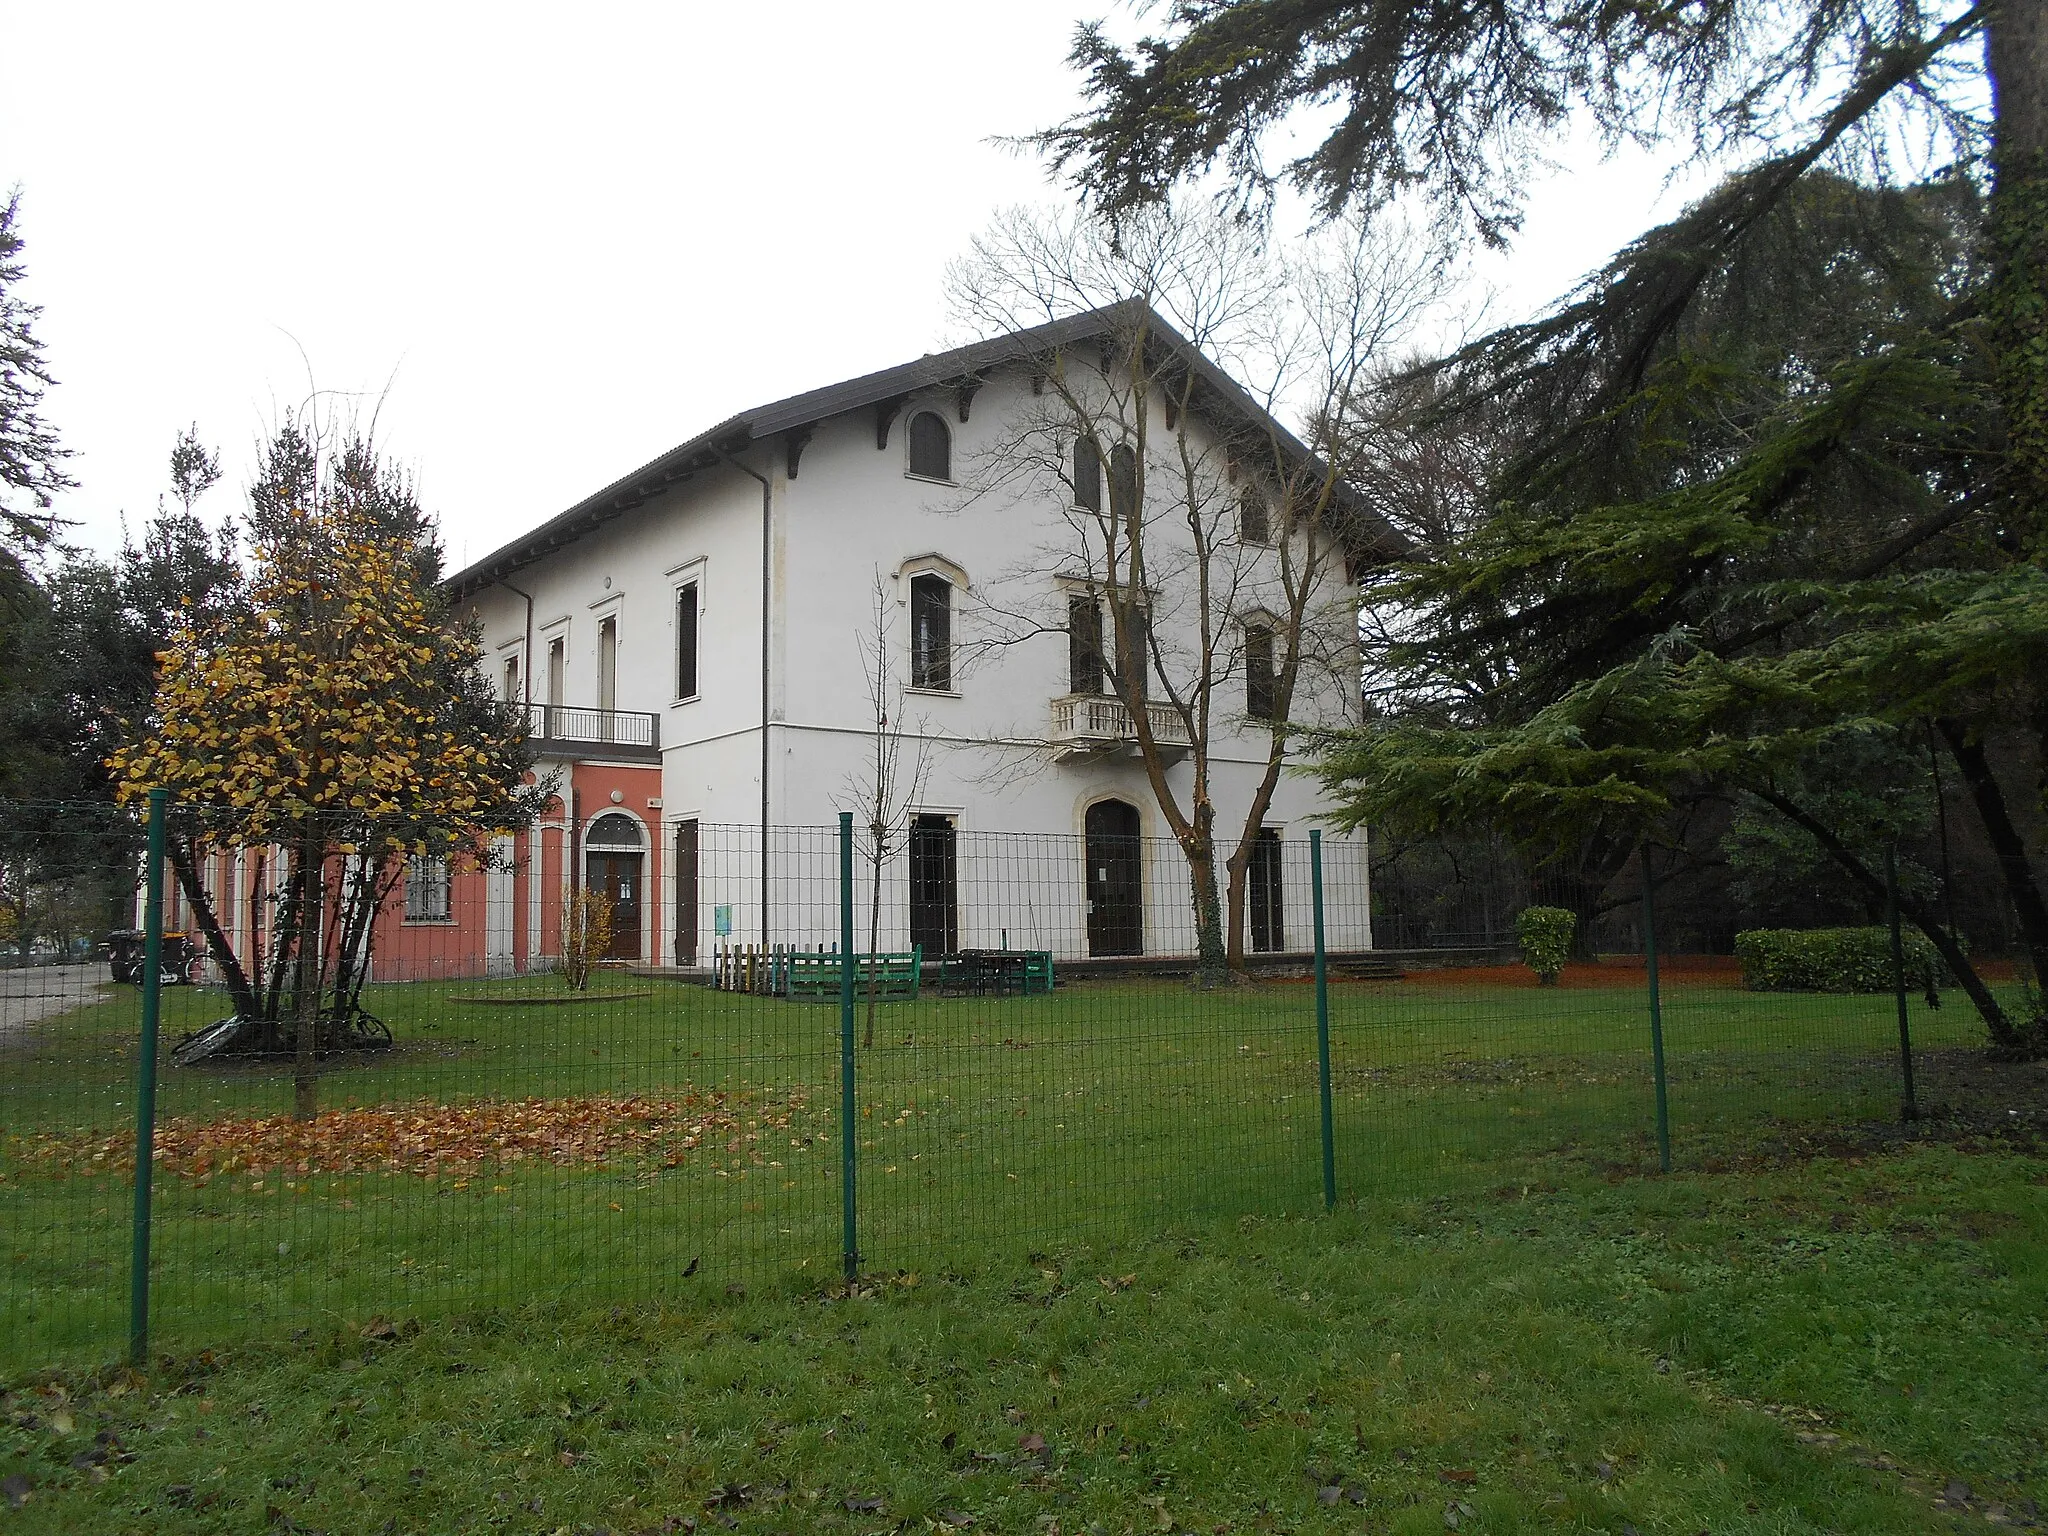 Photo showing: Scuola Stefanini di Voltabarozzo